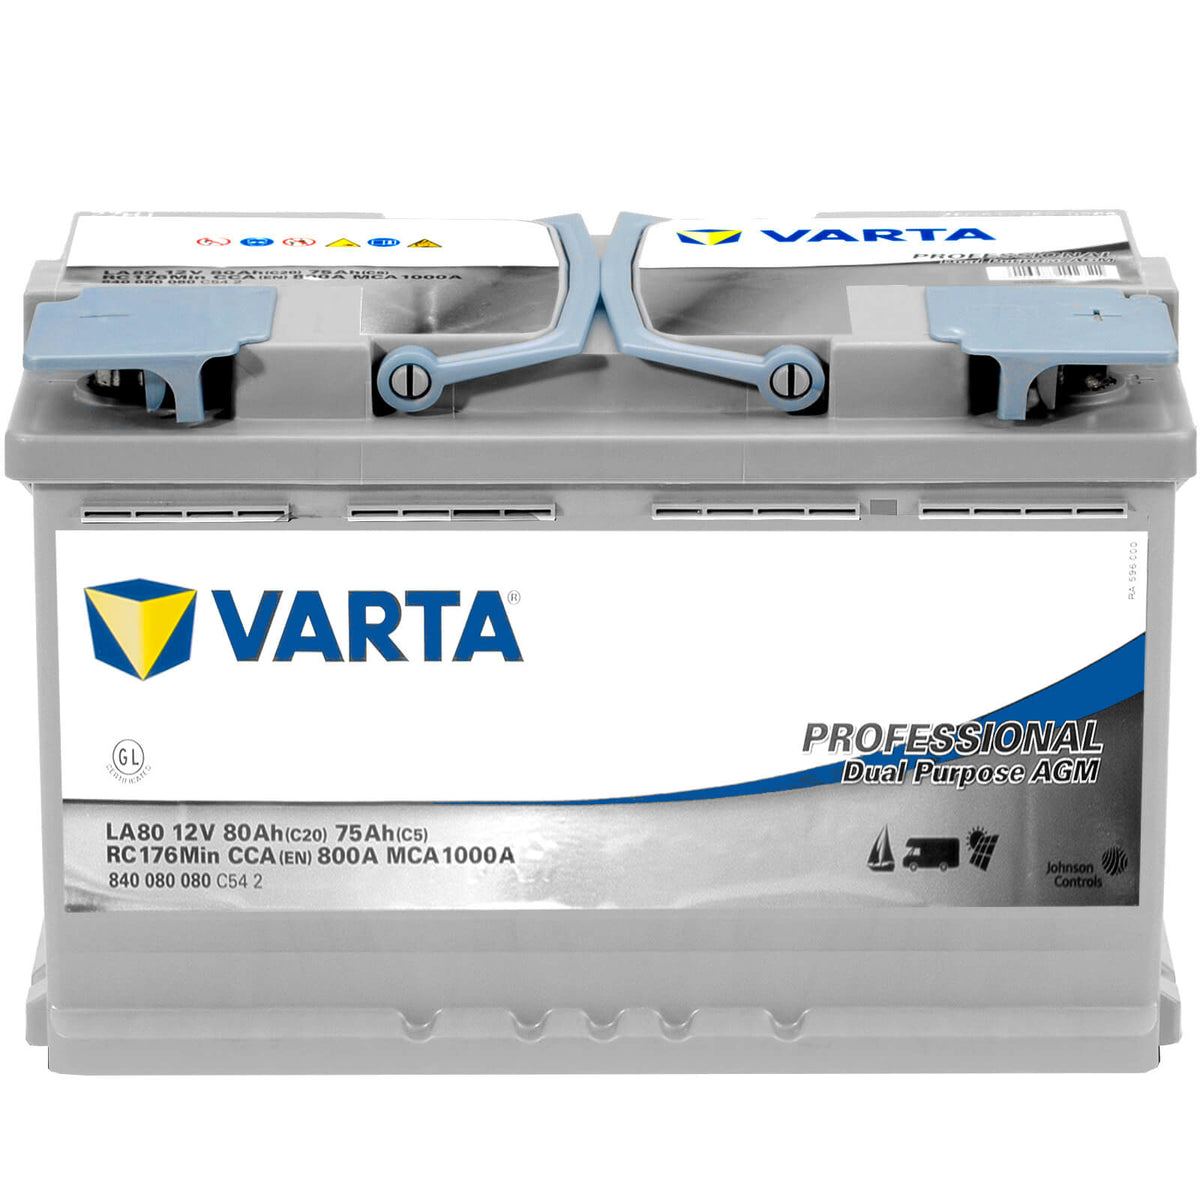 Varta LA80 Professional AGM 12V 80Ah 800A/EN